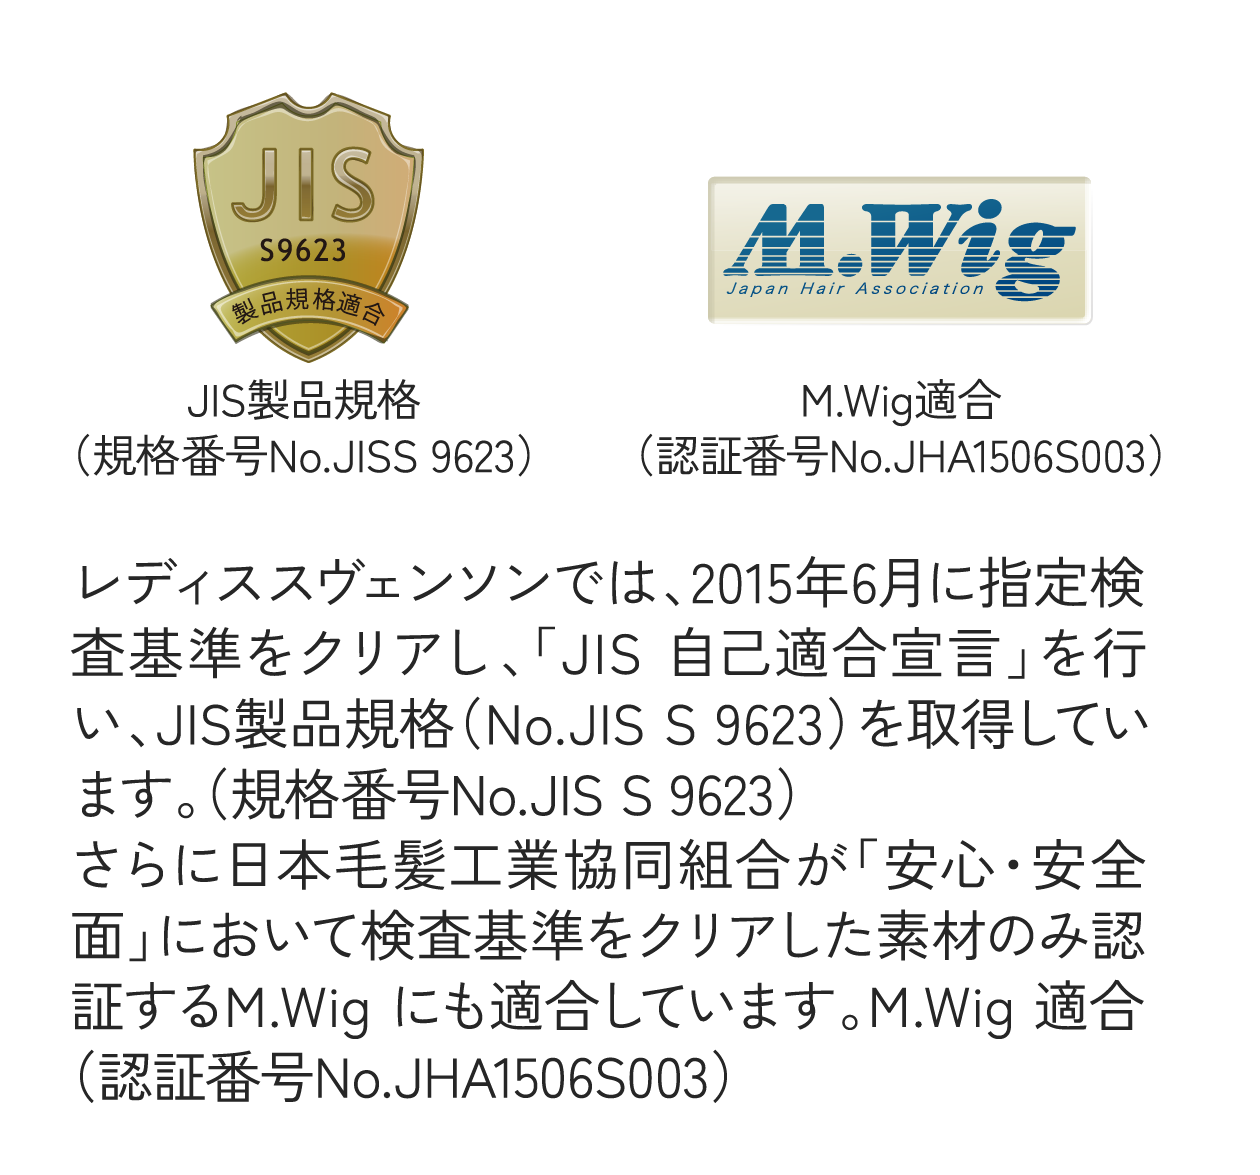 レディススヴェンソンでは、2015年6月に指定検査基準をクリアし、「JIS 自己適合宣言」を行い、JIS製品規格（No.JIS S 9623）を取得しています。（規格番号No.JIS S 9623）さらに日本毛髪工業協同組合が「安心・安全面」において検査基準をクリアした素材のみ認証するM.Wig にも適合しています。M.Wig 適合（認証番号No.JHA1506S003）